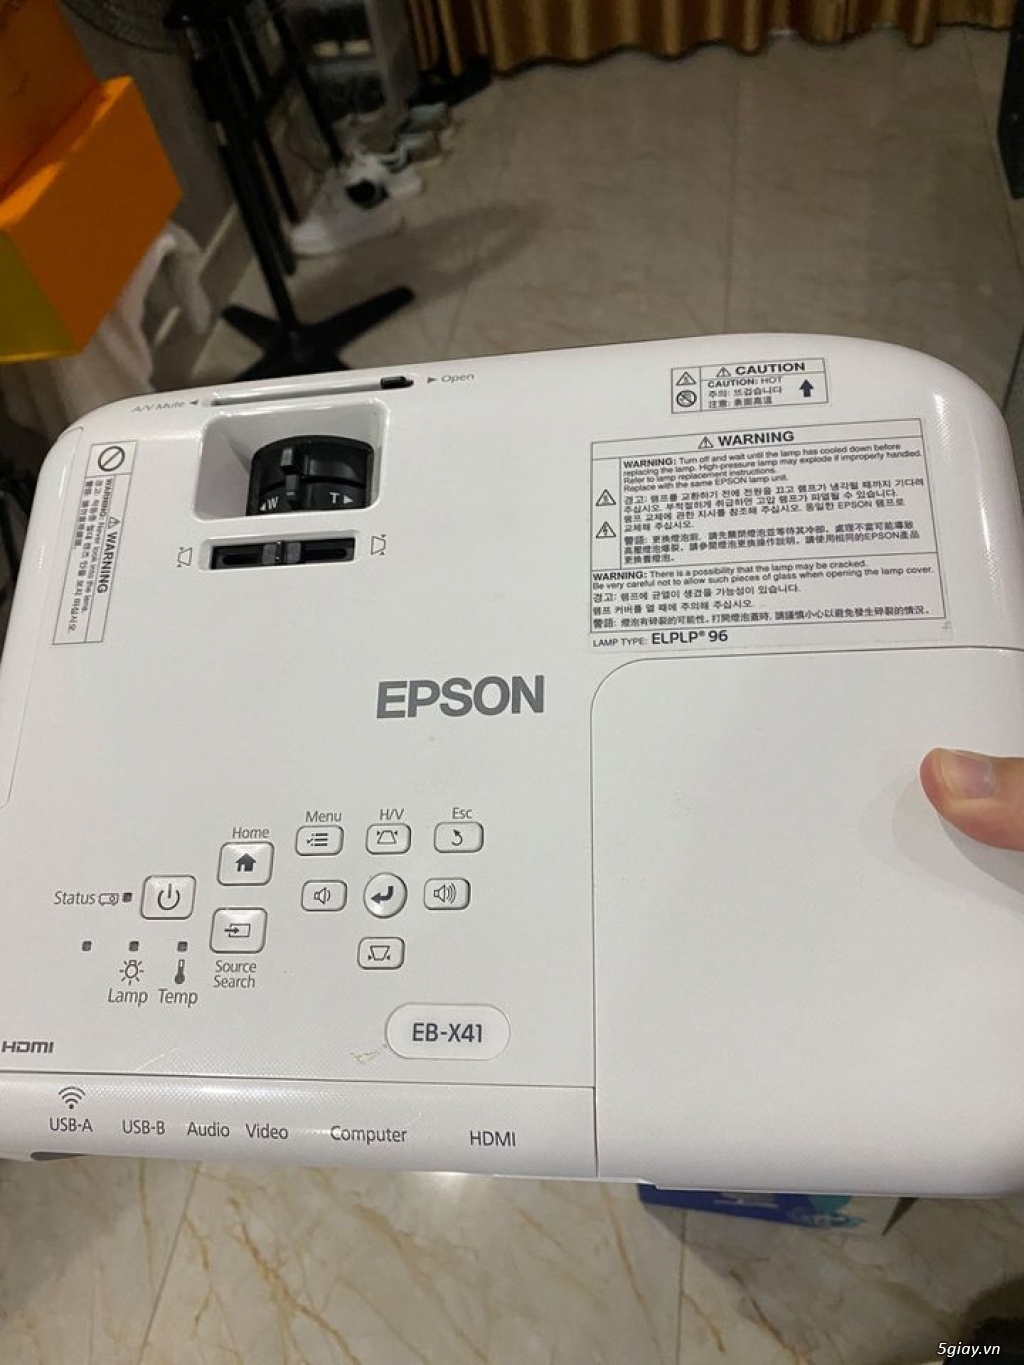 Cần thanh lý máy chiếu Epson EB X41 + Pointer như hình - 3